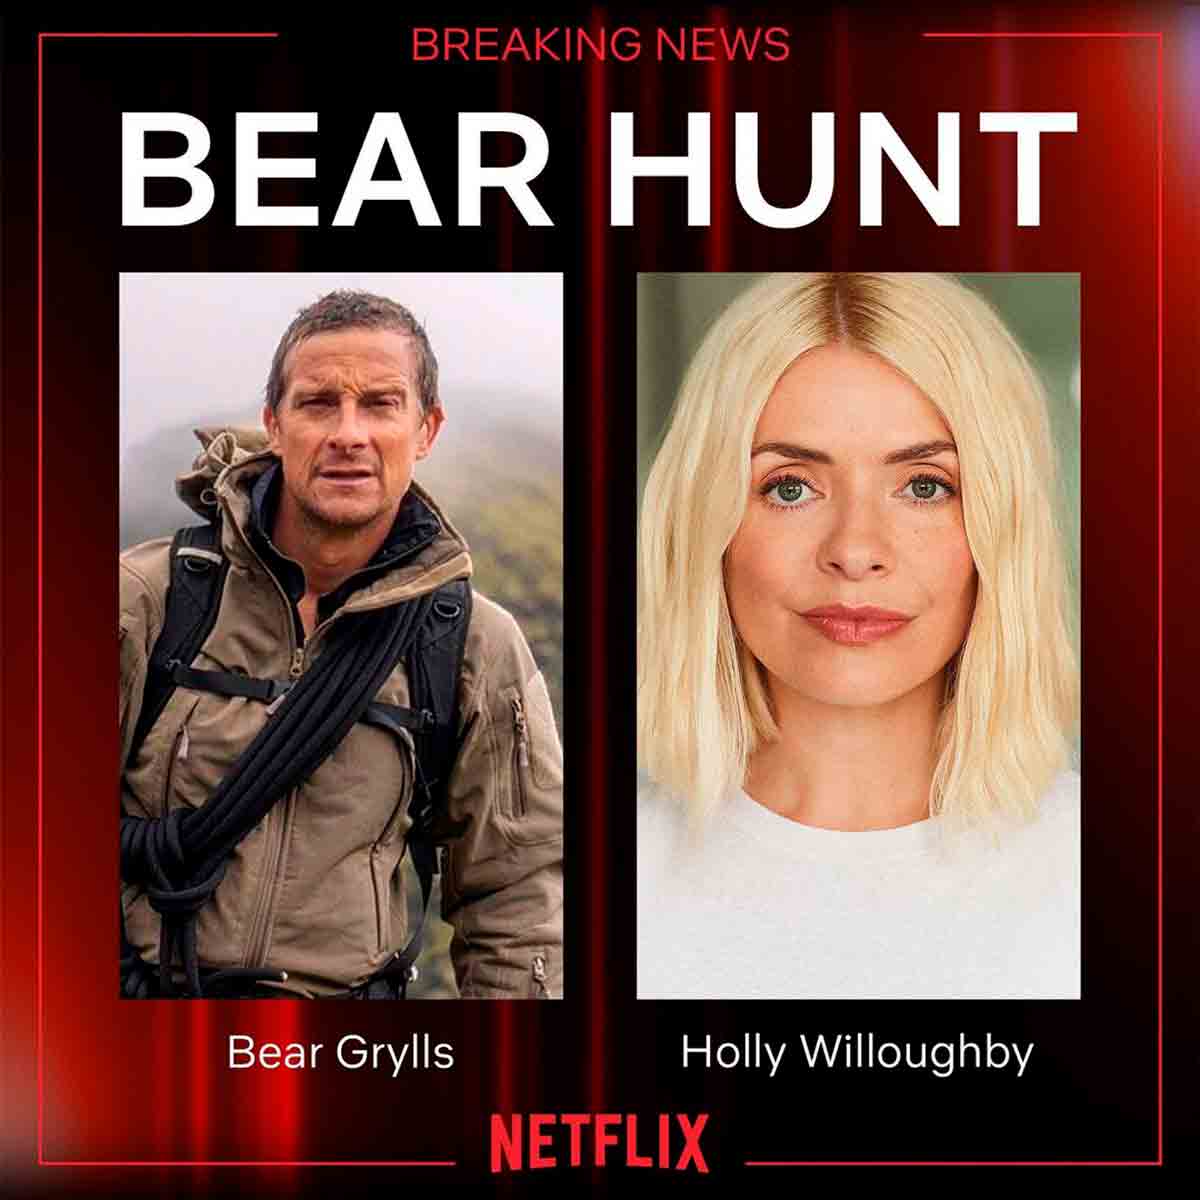 Holly Willoughby é confirmada como apresentadora de novo programa de sobrevivência na Netflix (Instagram / @hollywilloughby)